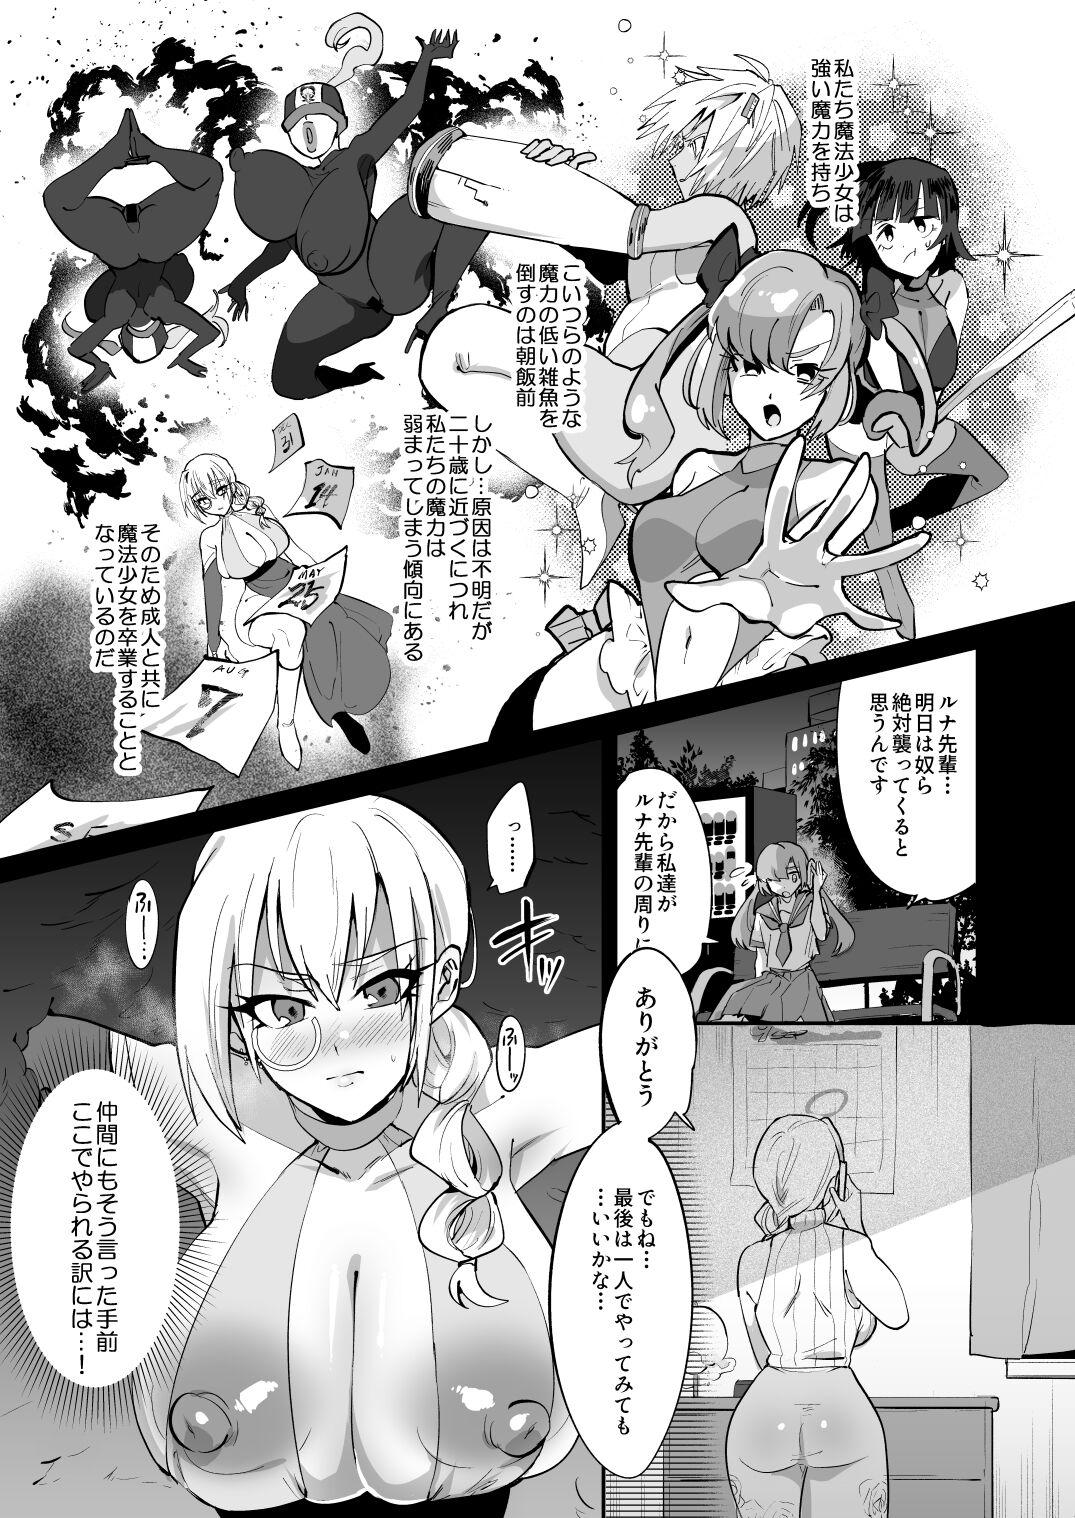 Magical Girl vs Futanari Combatant Sisters 4